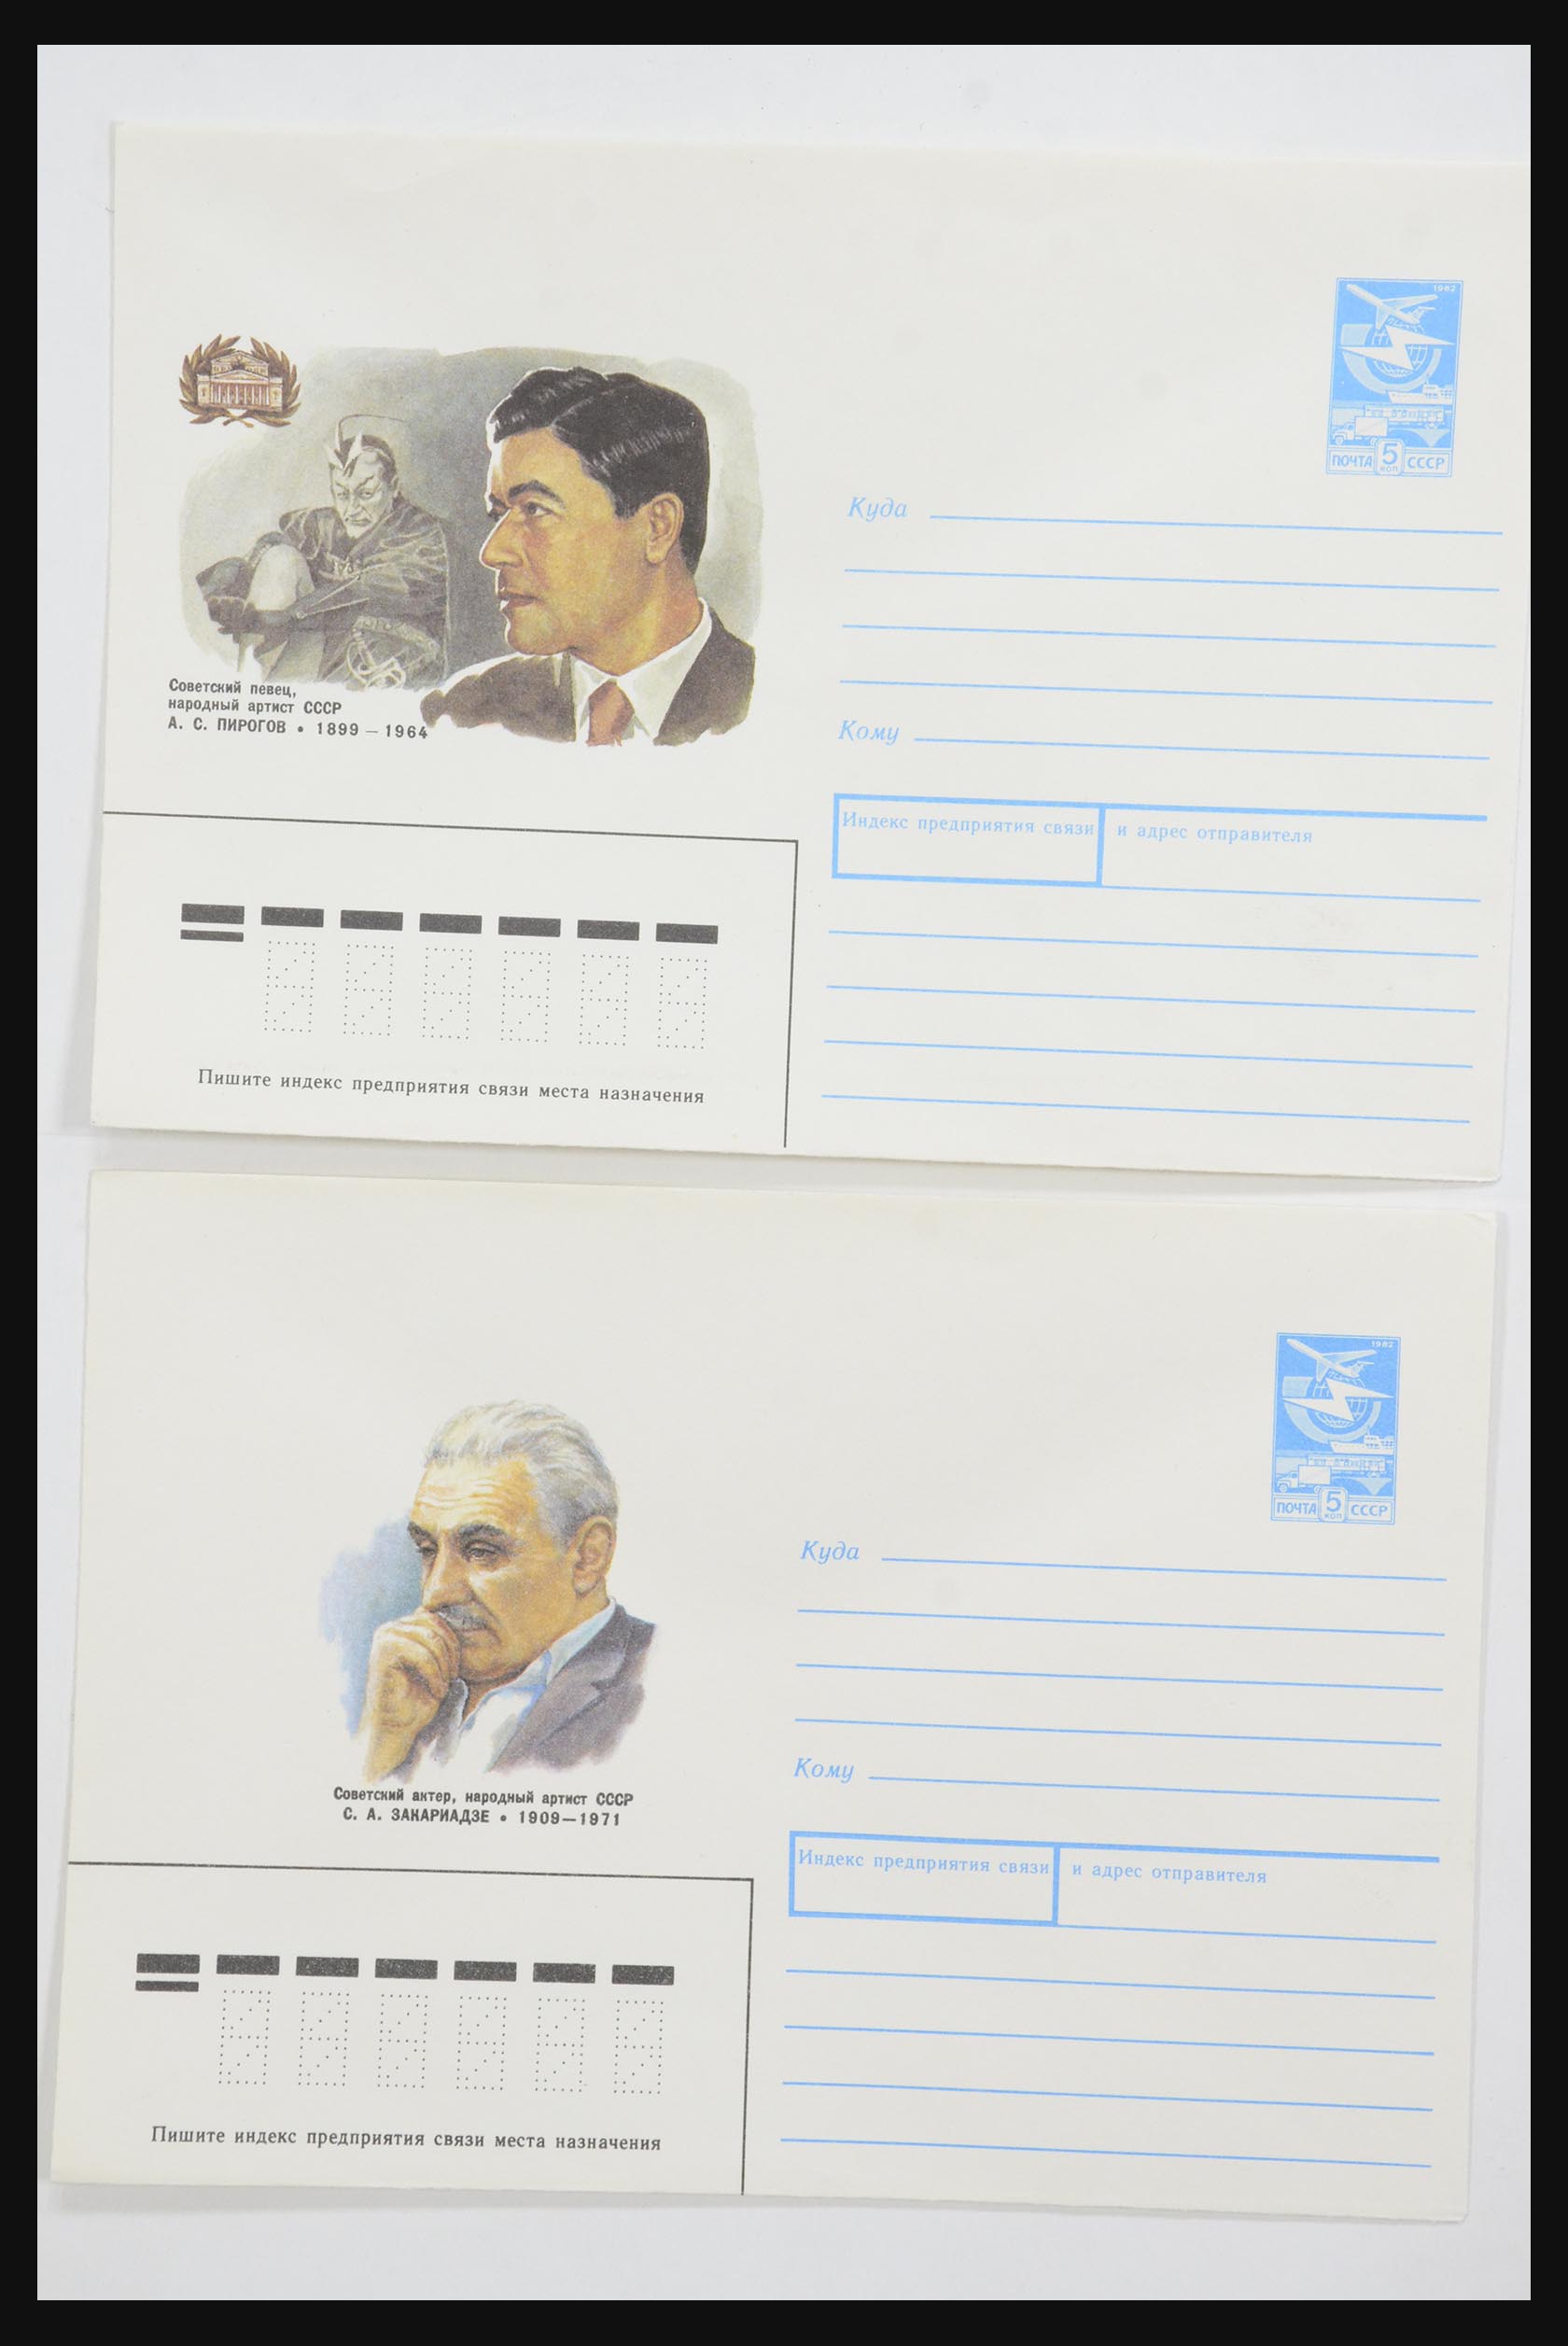 31928 0046 - 31928 Oost Europa brieven jaren 60/90.